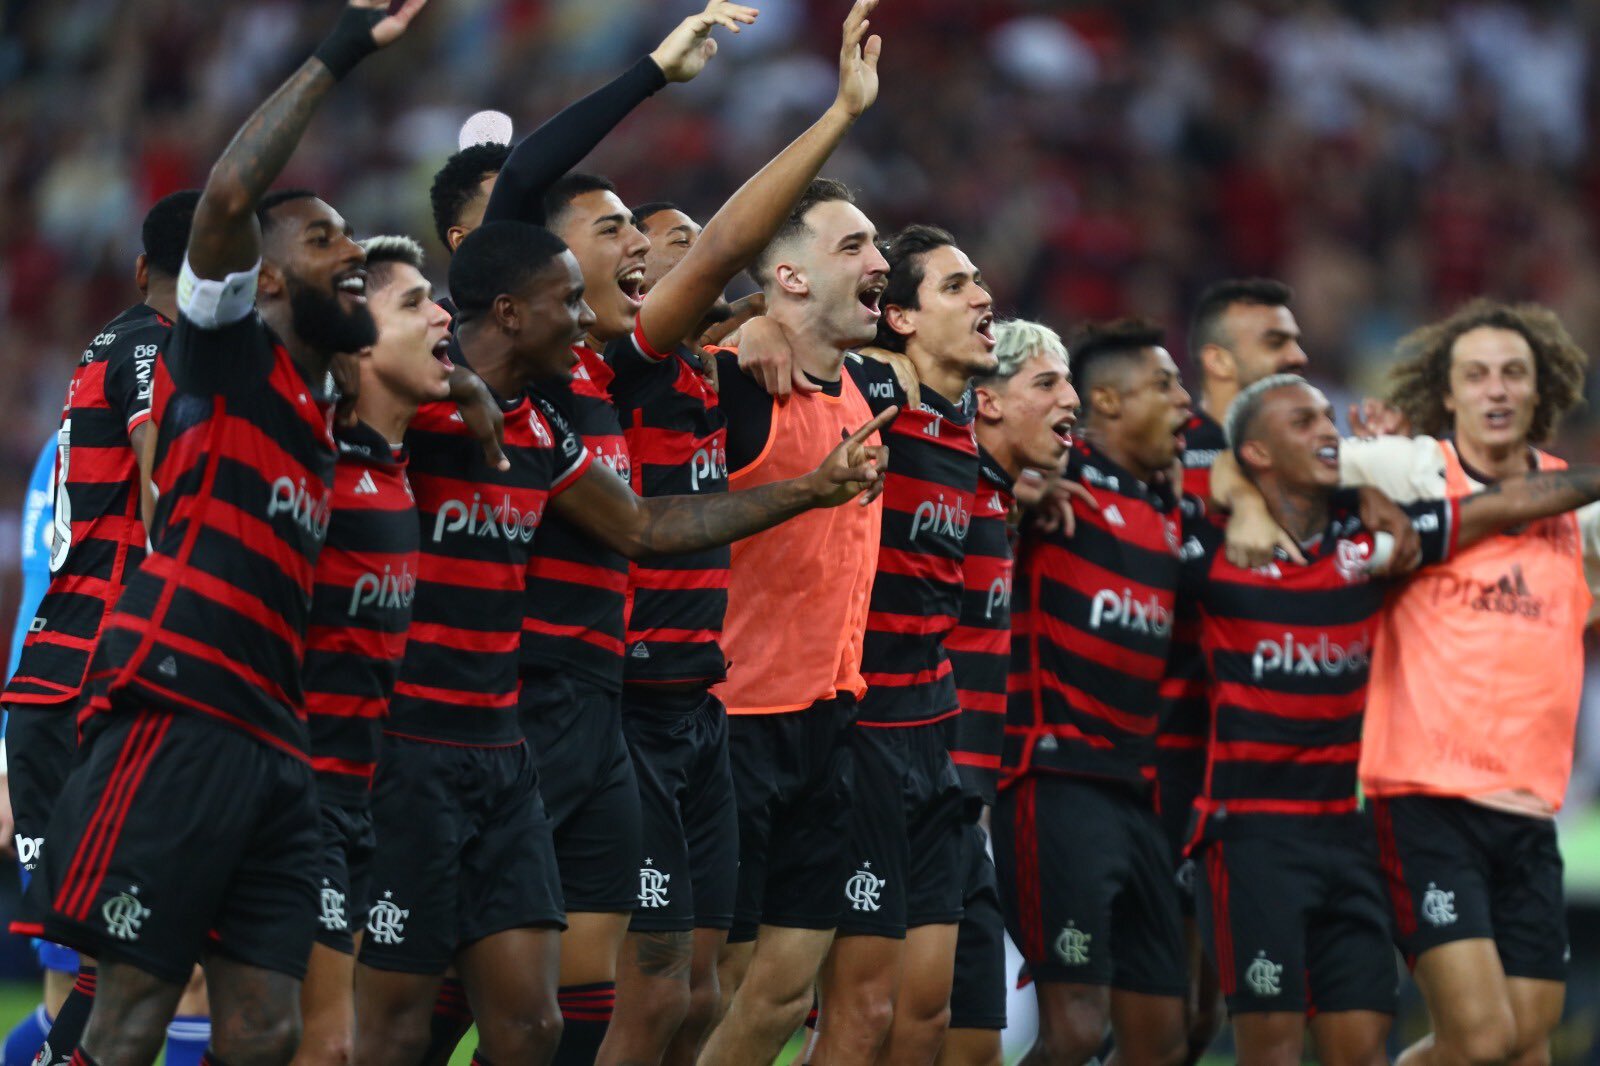 Lucas Silva projeta duelo difícil contra o Flamengo: "Sabemos das dificuldades"